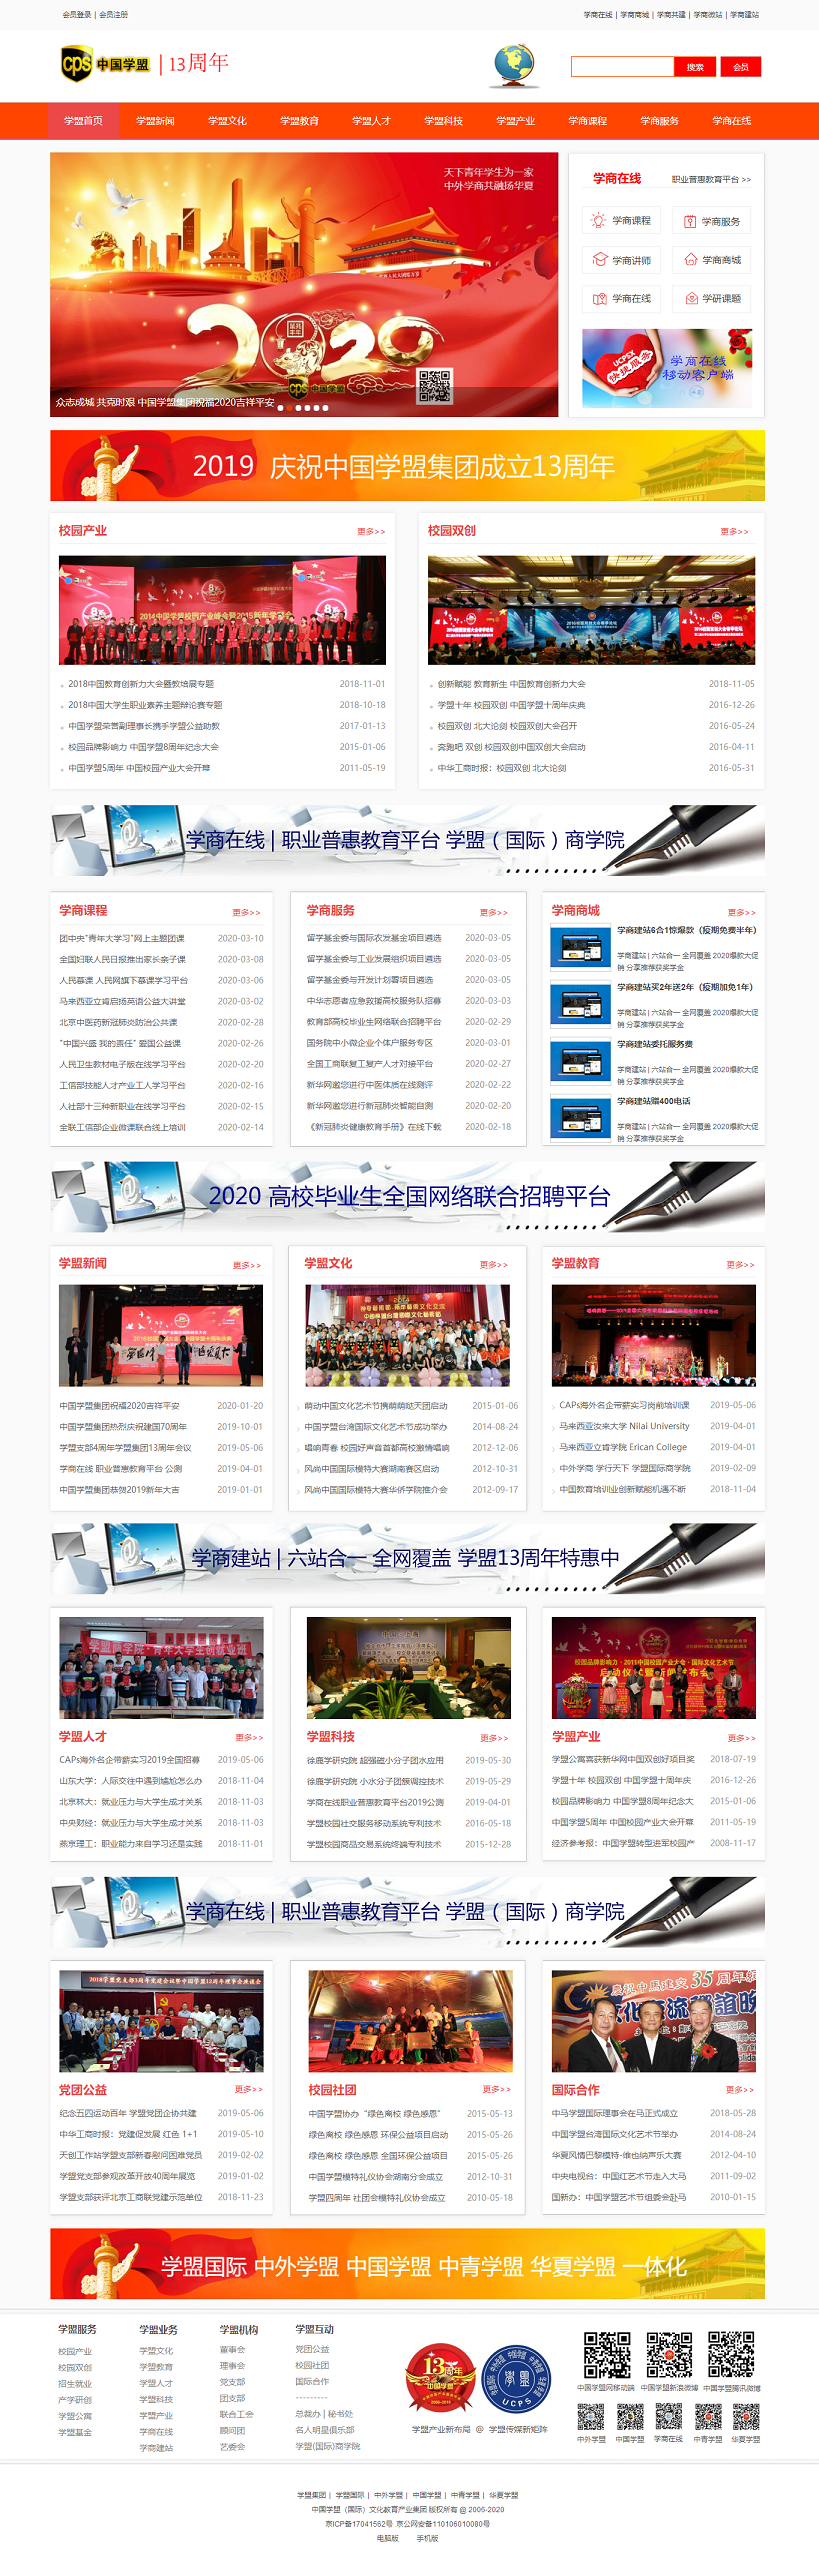 2020 中国学盟 网站版.1.png